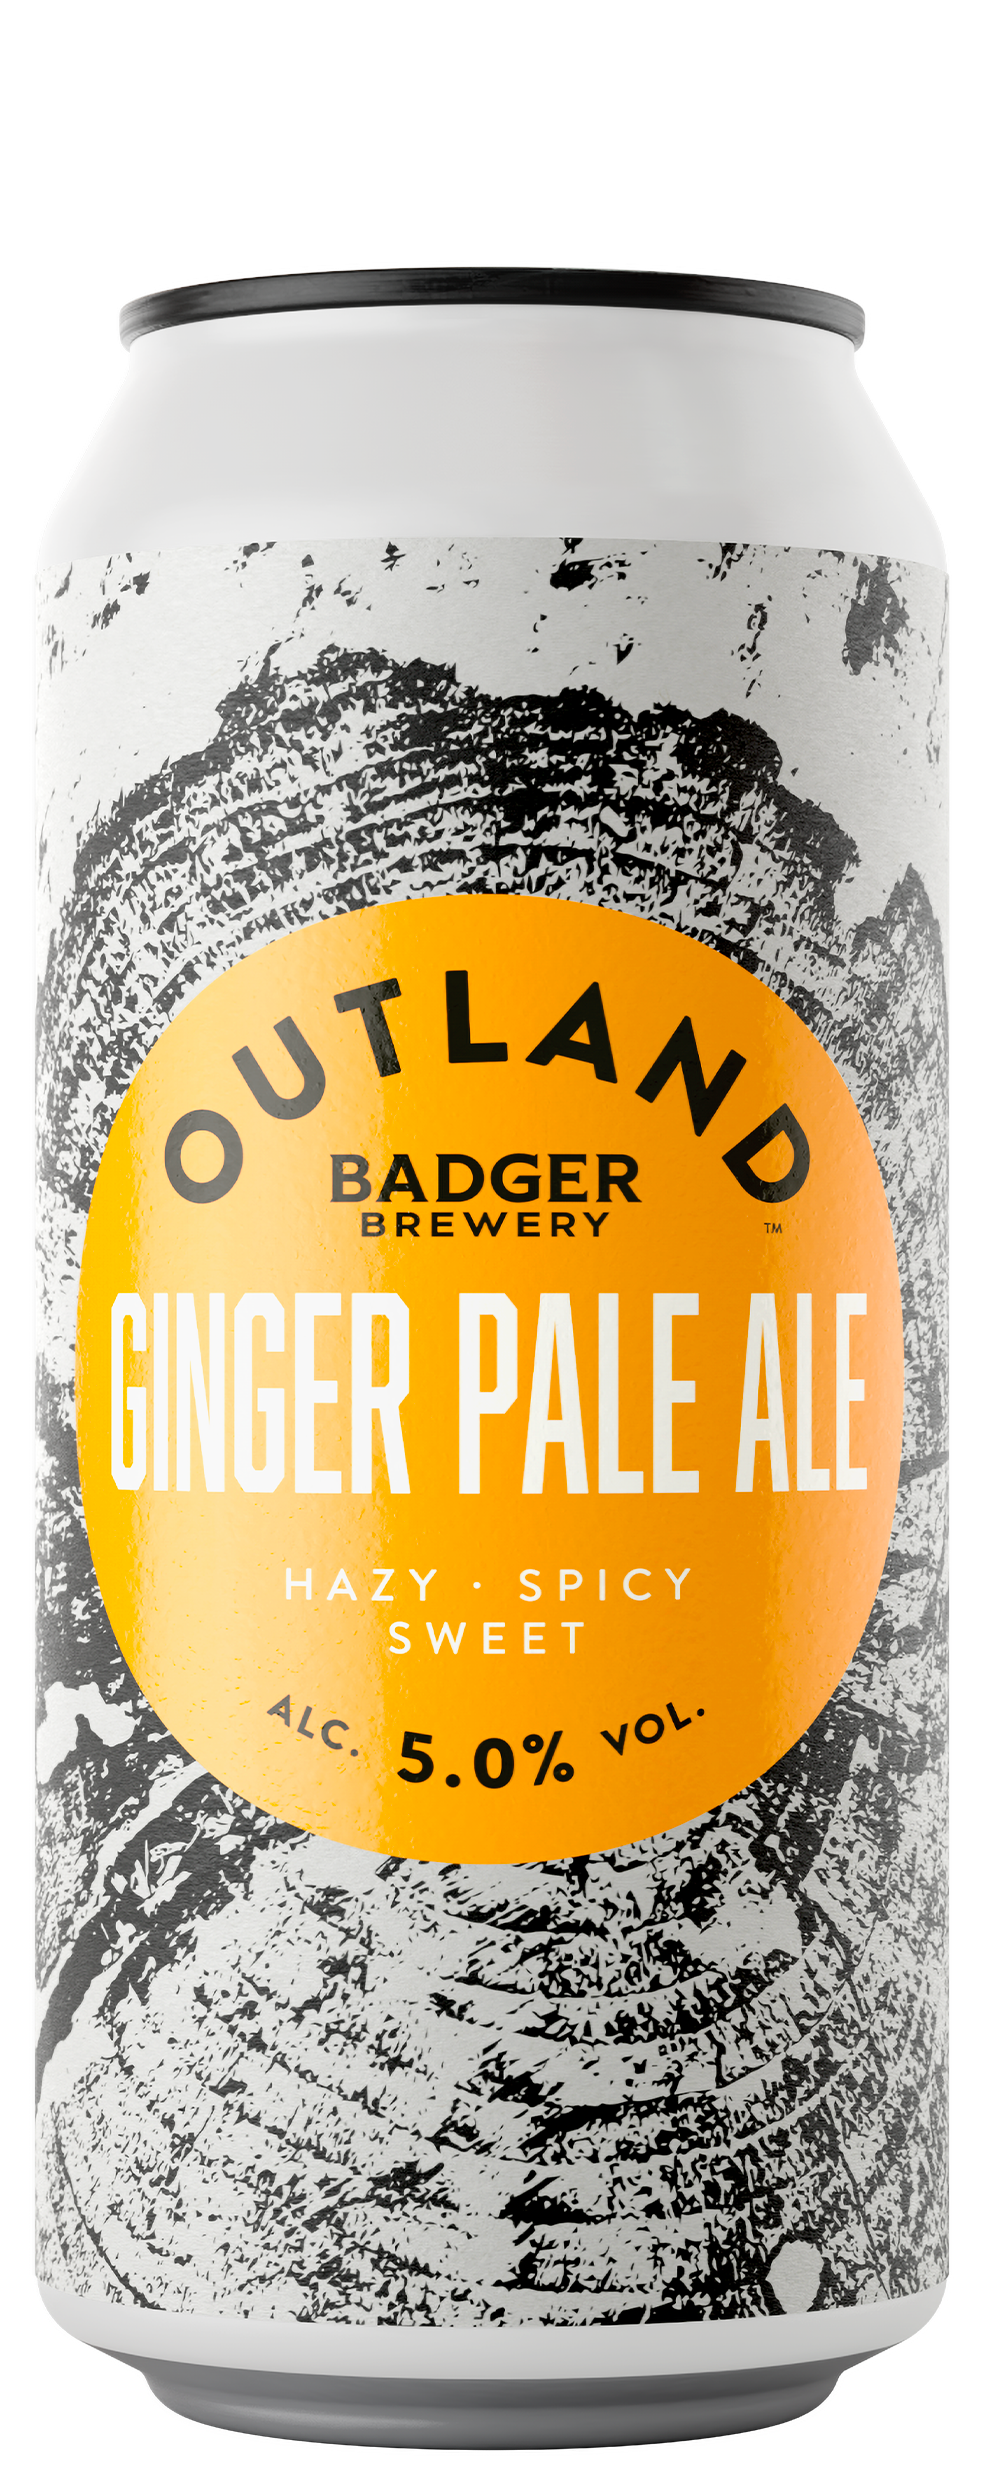 Outland Ginger Pale Ale Bottle